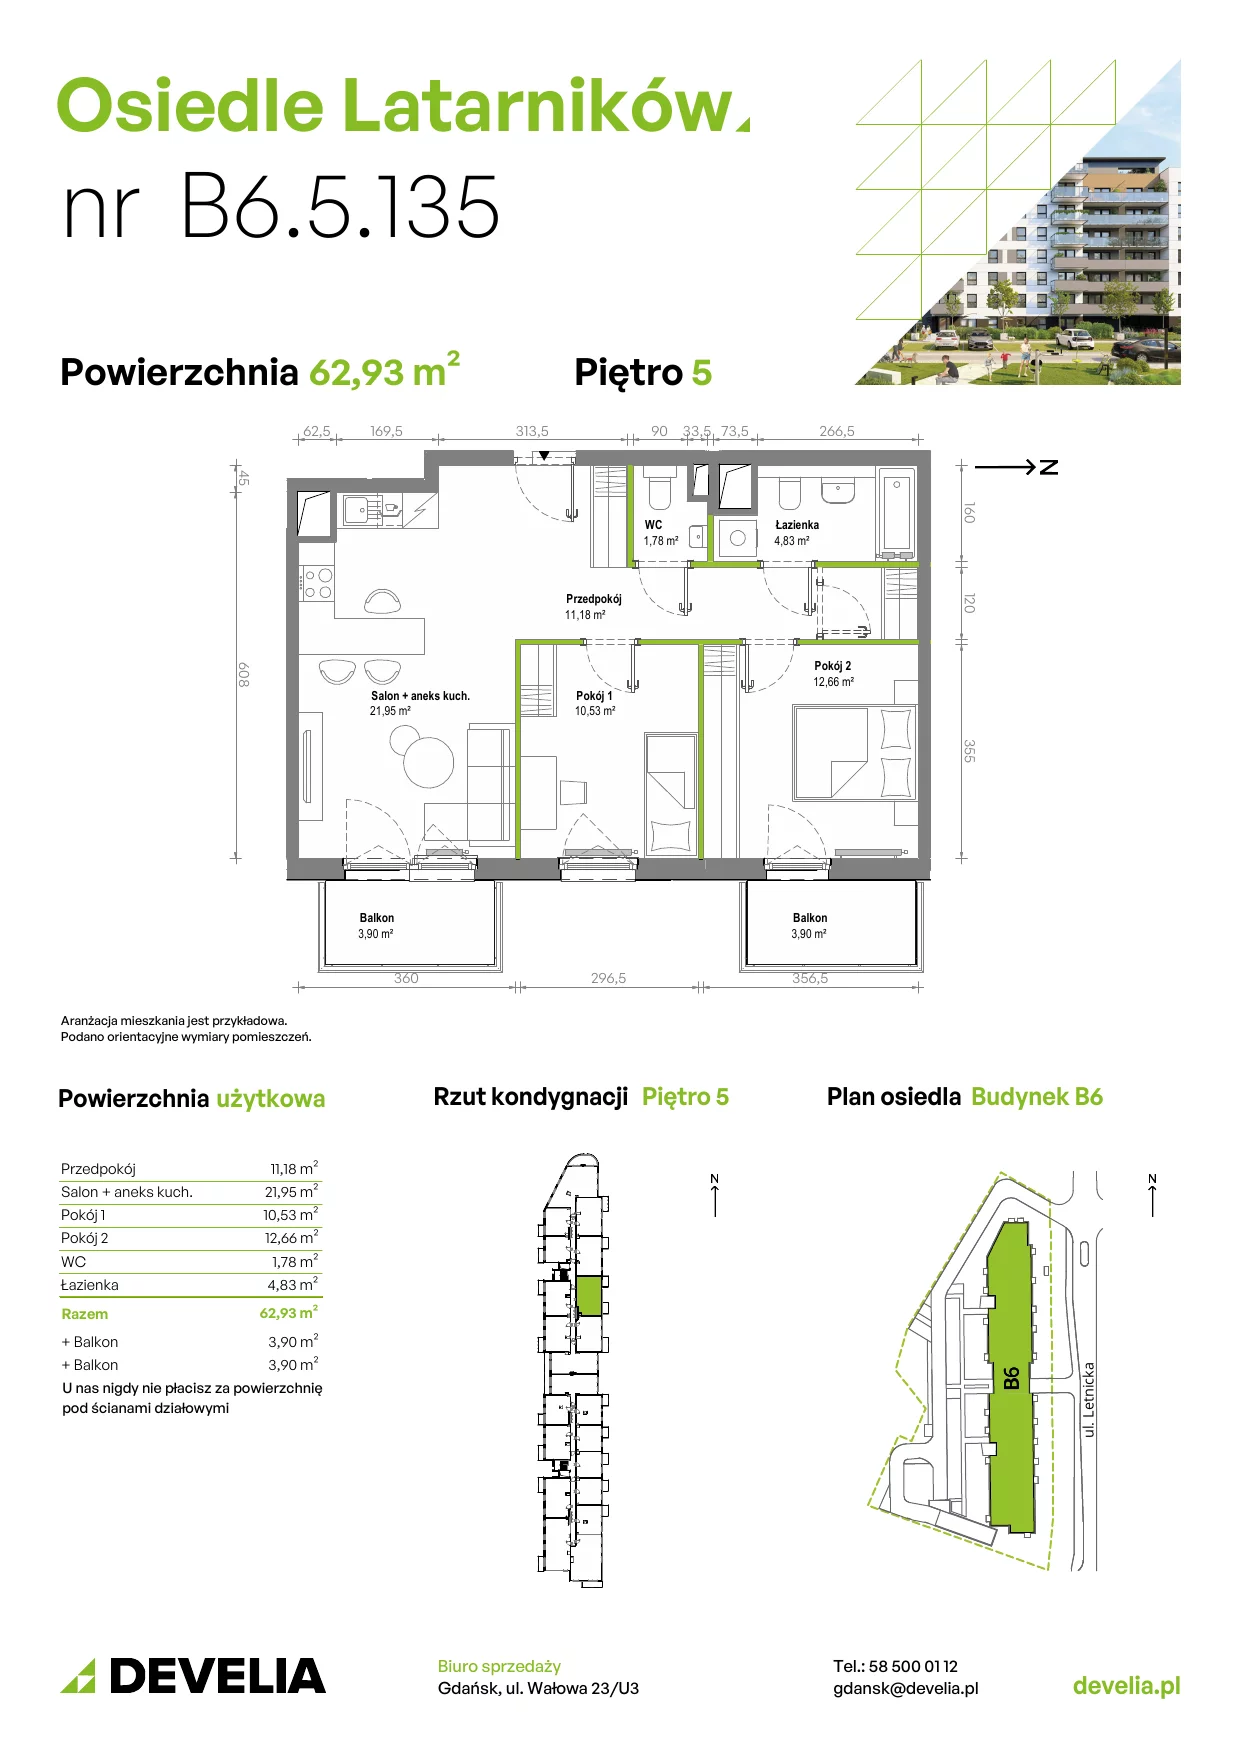 Mieszkanie 62,87 m², piętro 5, oferta nr B6.5.135, Osiedle Latarników, Gdańsk, Letnica, ul. Letnicka 1